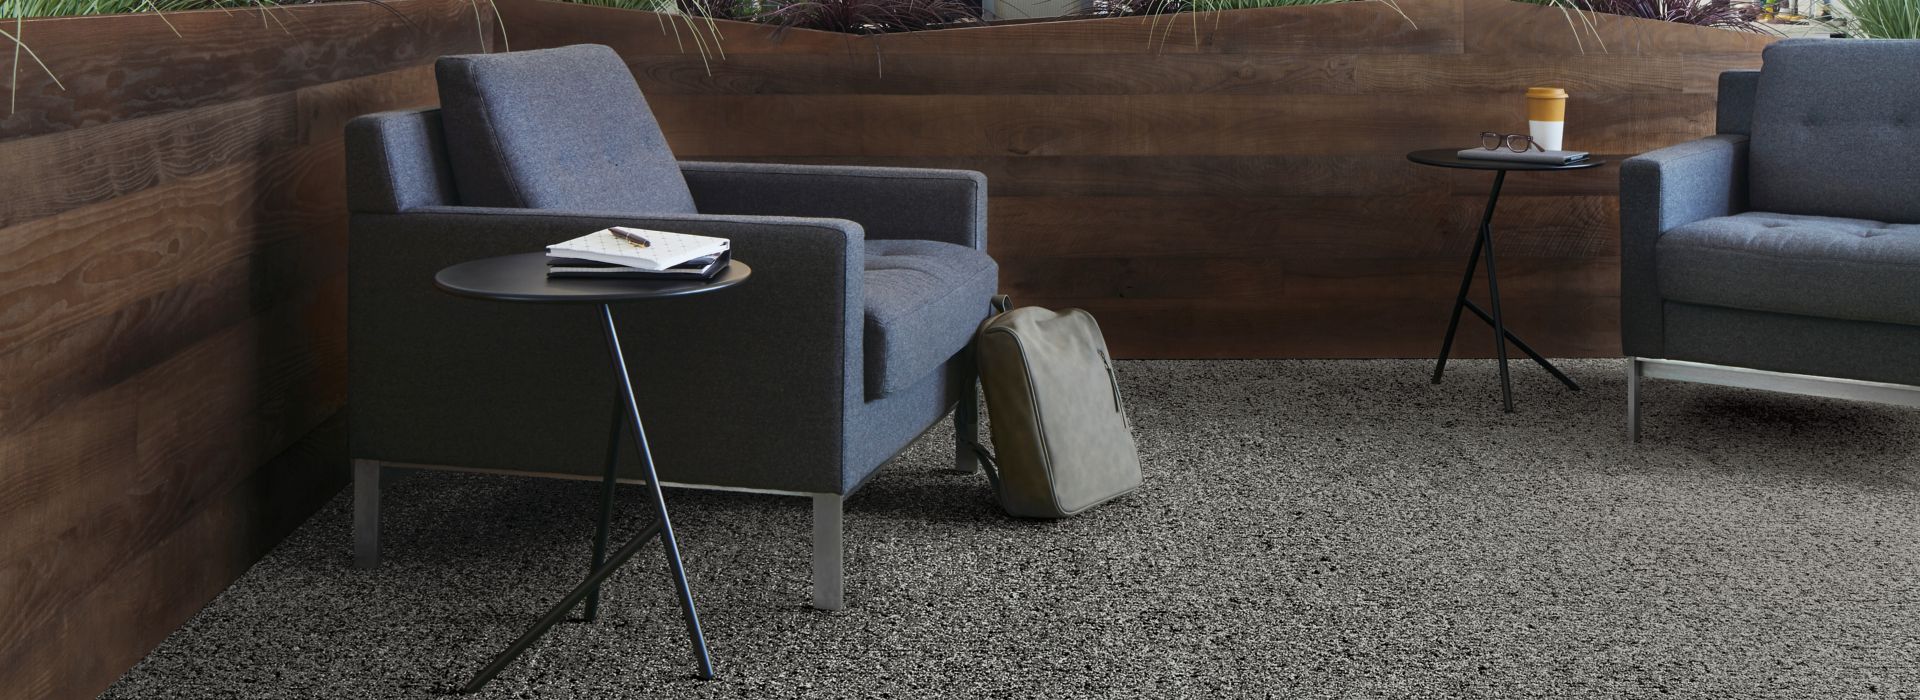 Interface Riverwalk carpet tile in lounge area